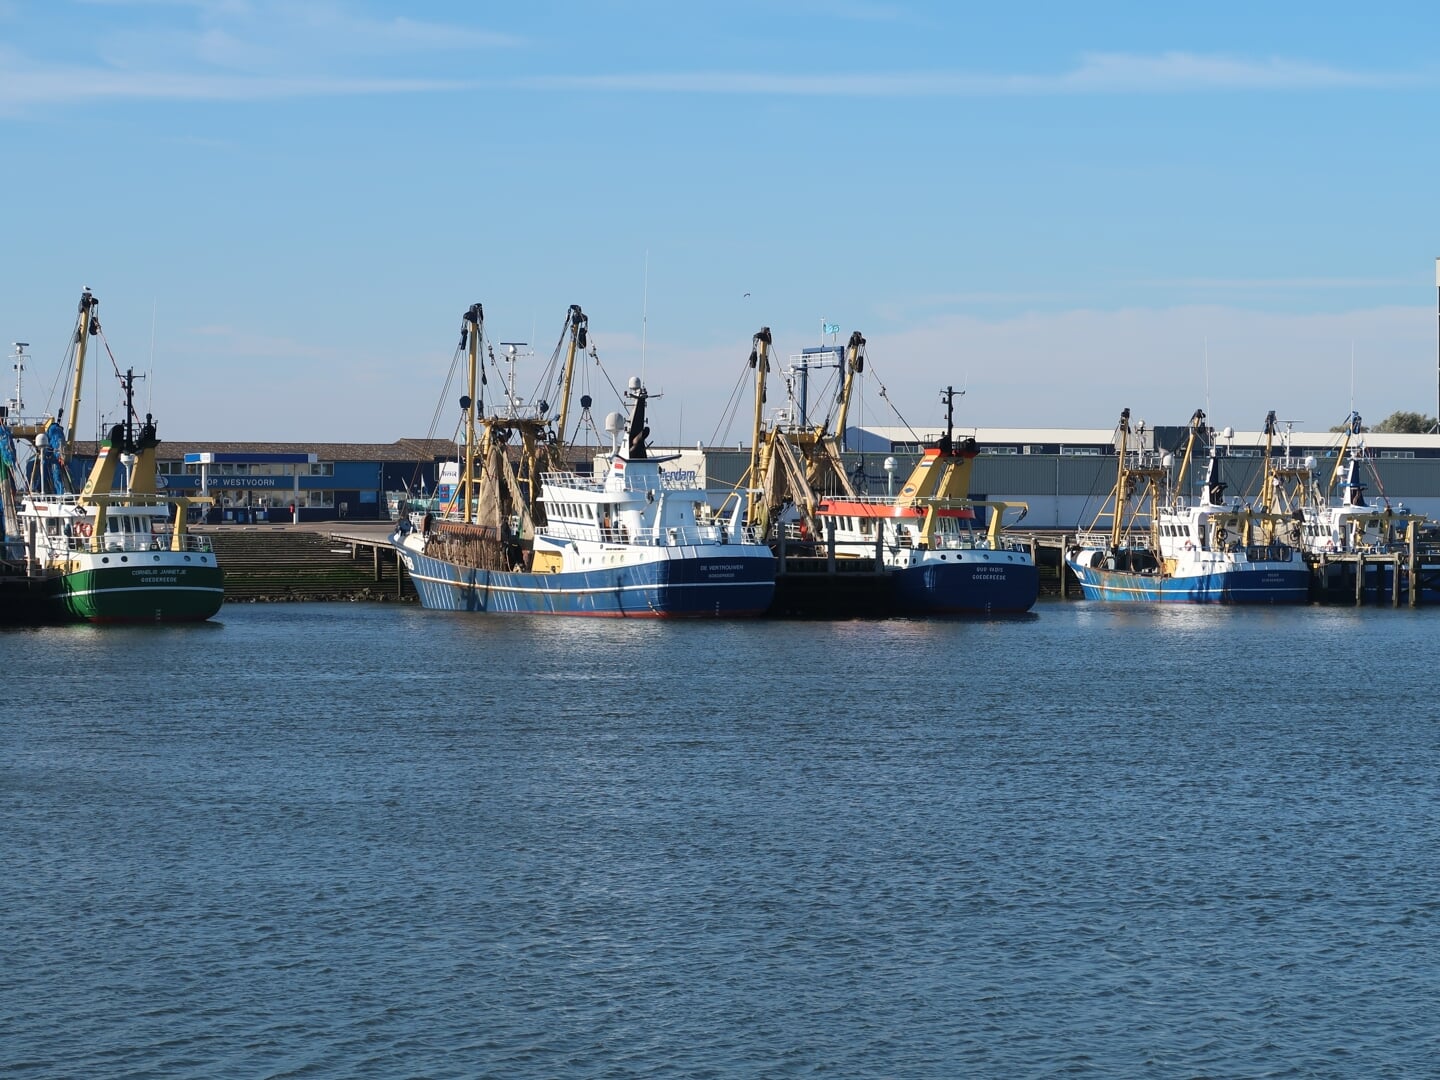 De haven van Stellendam, met uiterst links de GO-23. (Archieffoto: W.M. den Heijer)